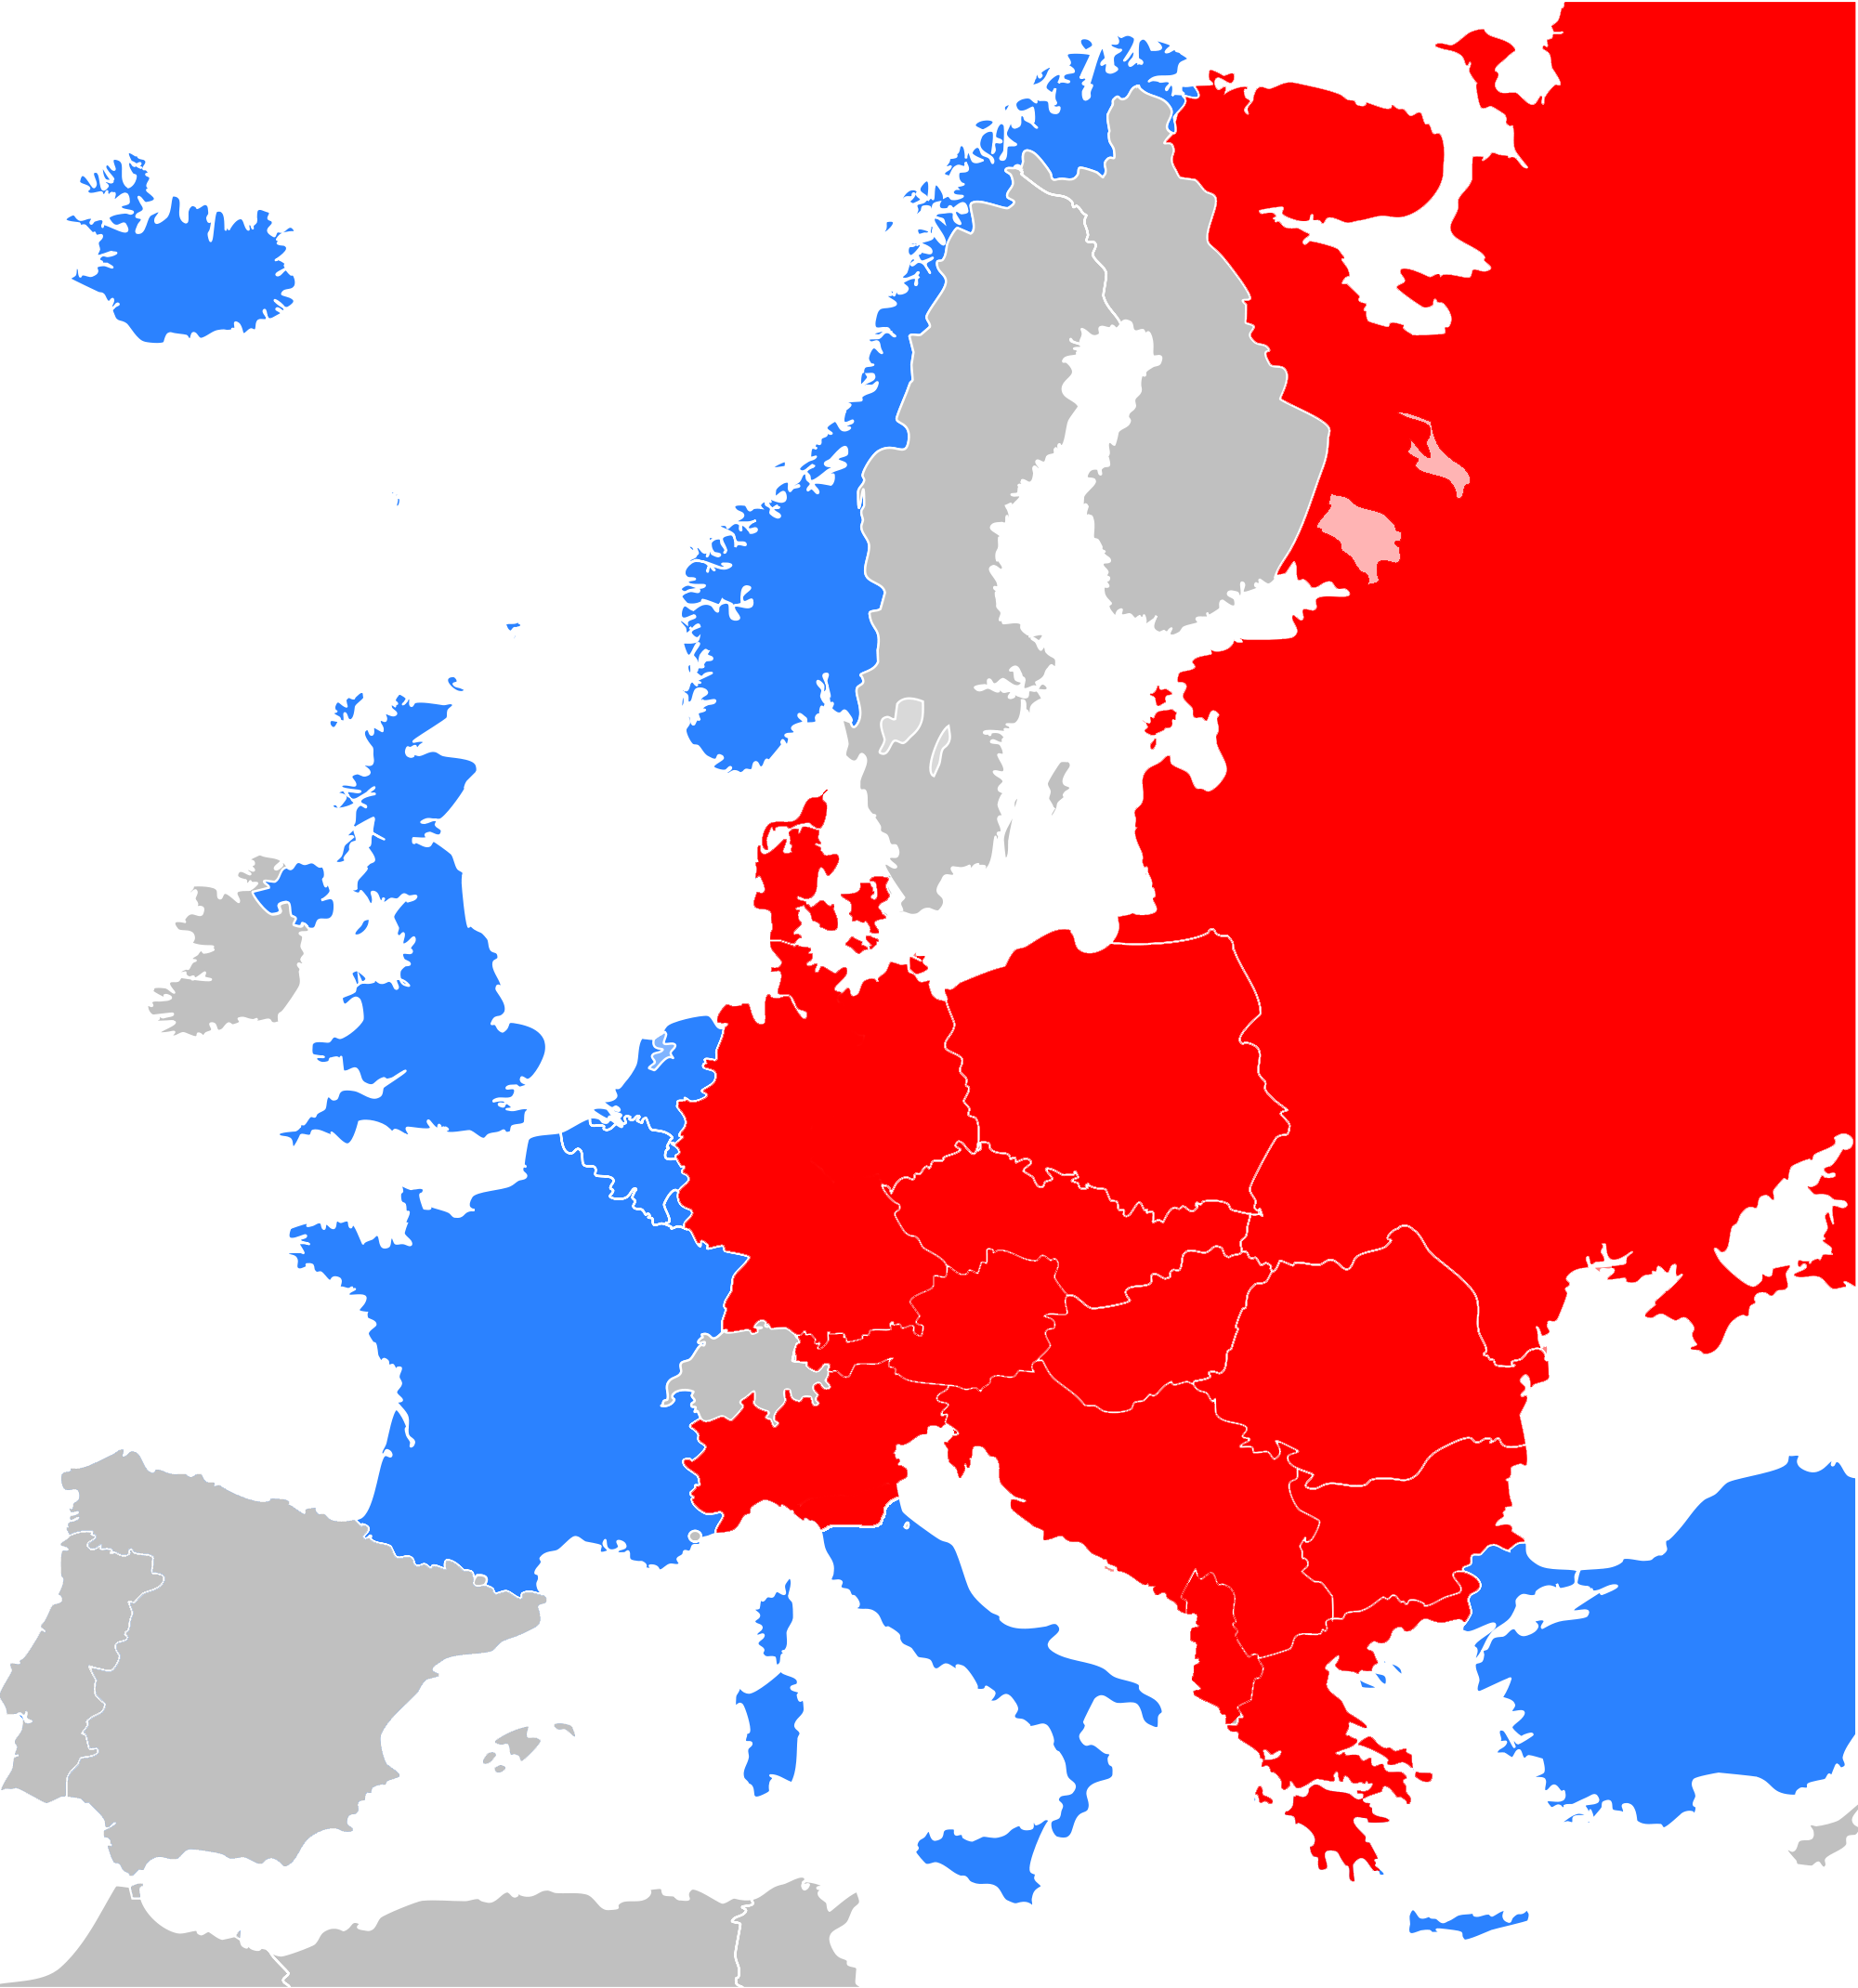 Mapa Interactivo De Europa Guerra Fria Images And Photos Finder